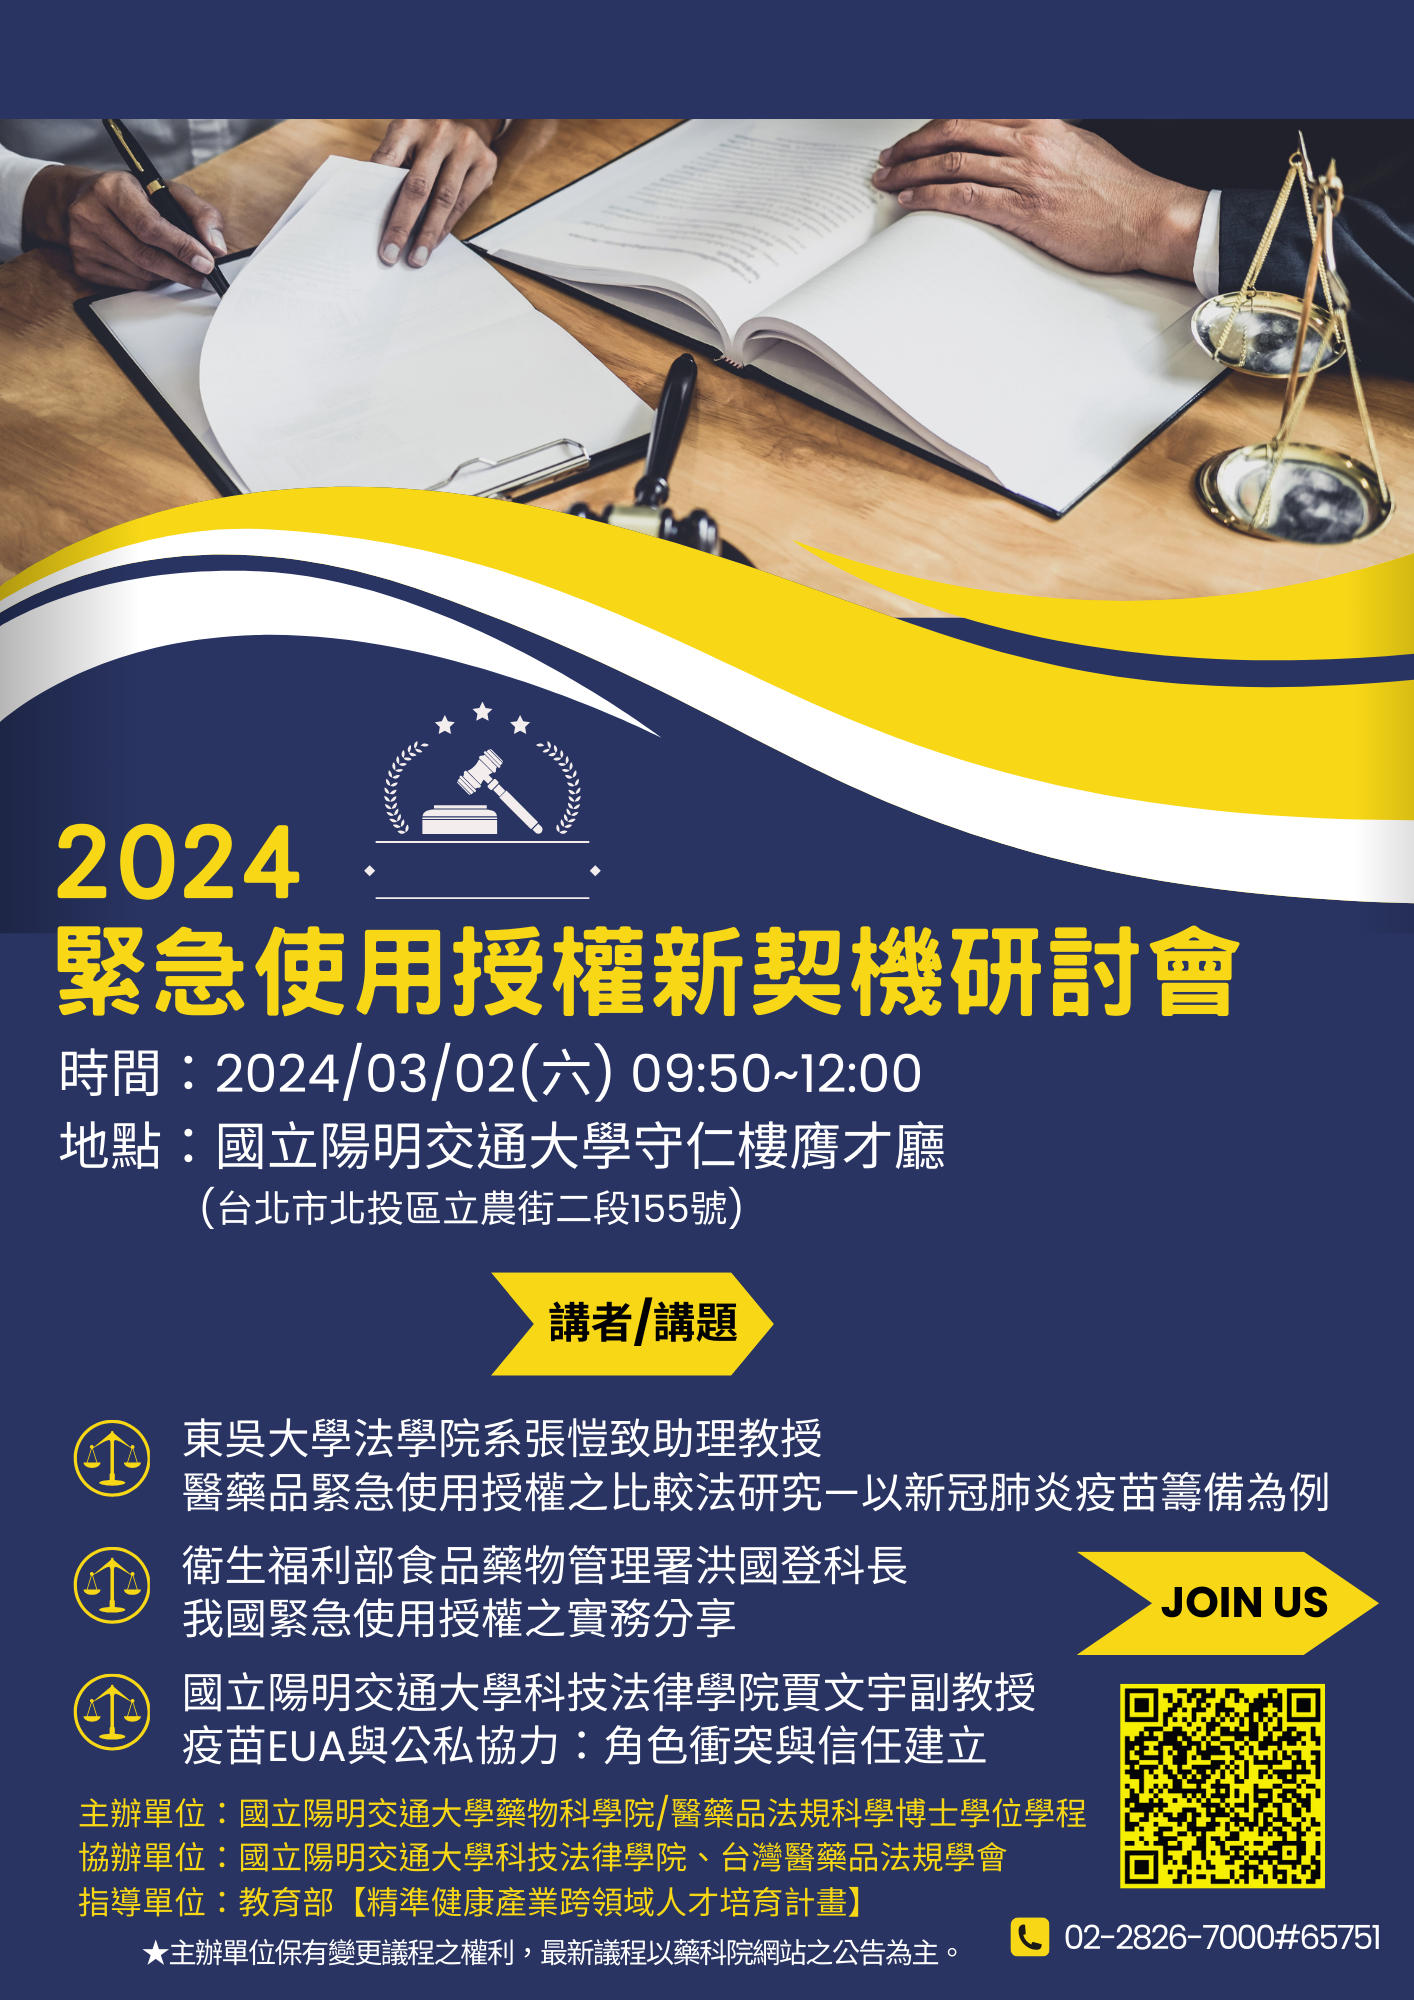 【活動轉知】國立陽明交通大學「2024緊急使用授權新契機」研討會